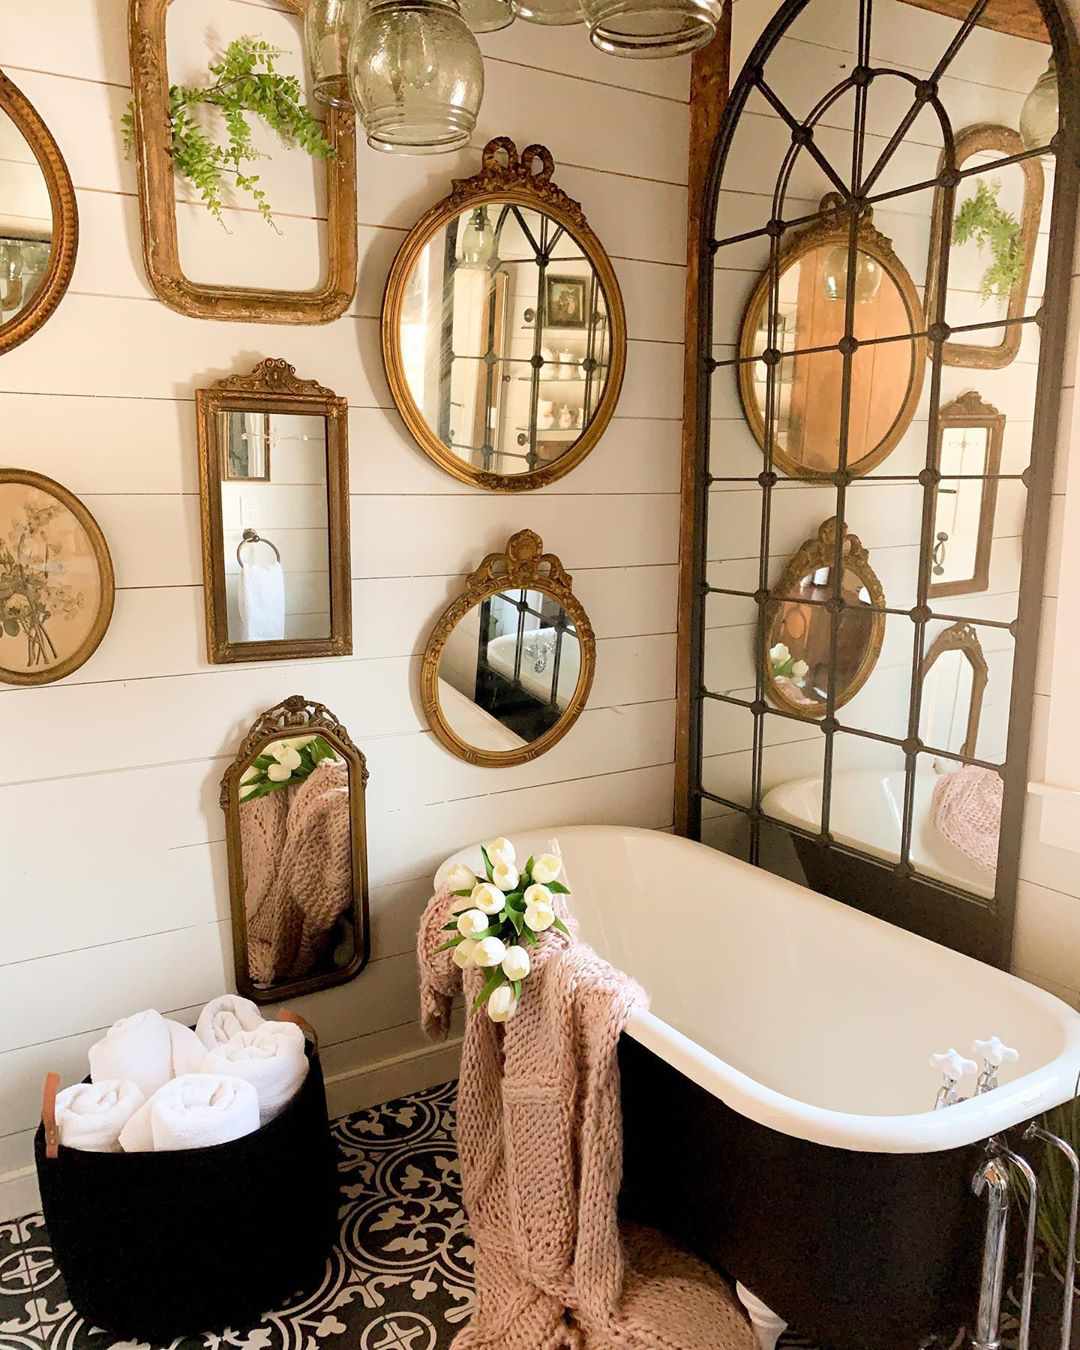 baño rústico con muchos espejos vintage